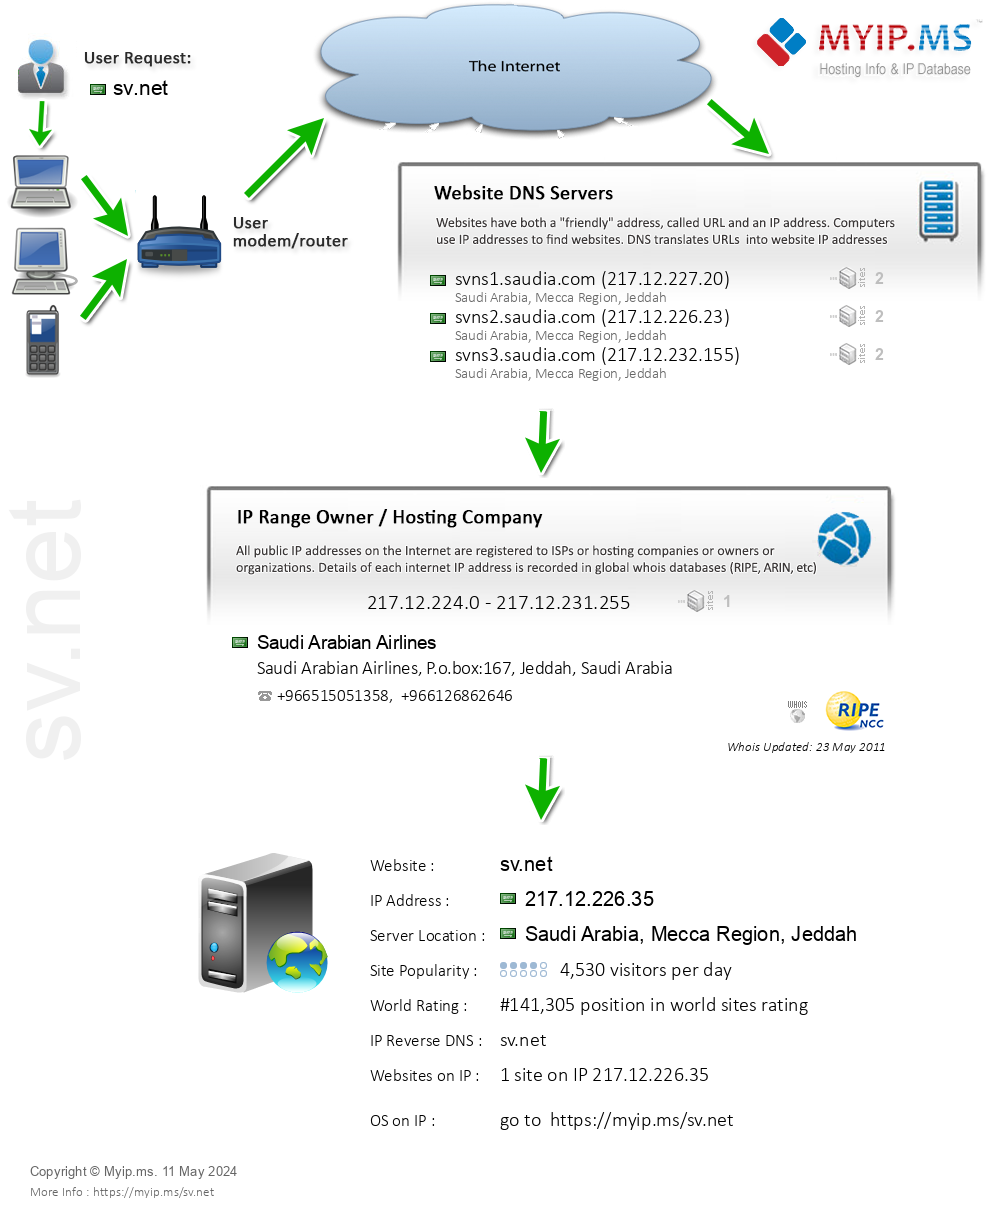 Sv.net - Website Hosting Visual IP Diagram